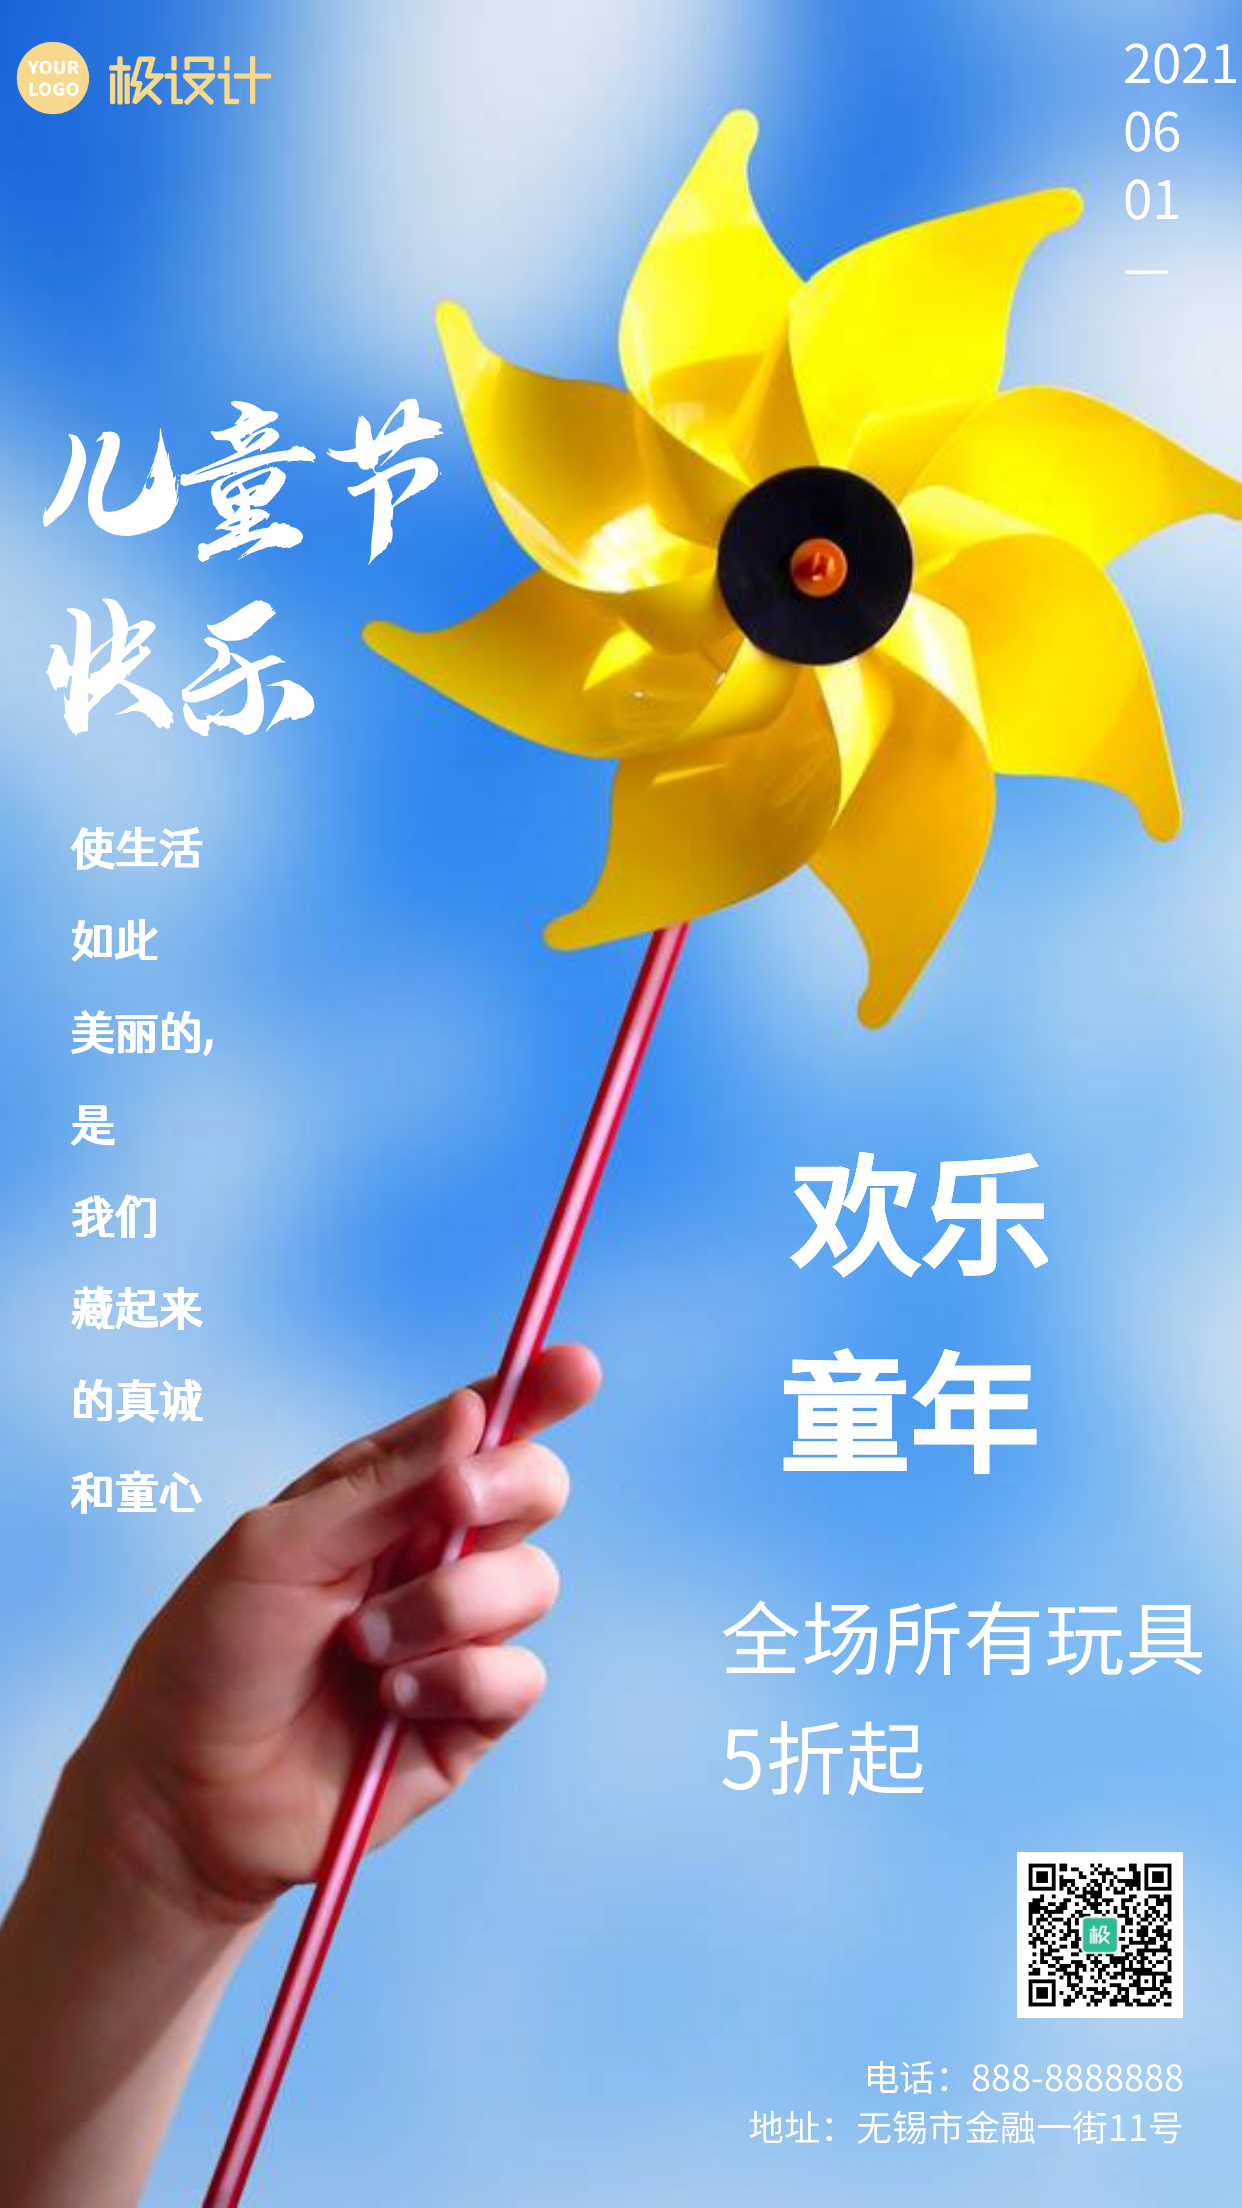 黄色风车创意风六一儿童节优惠活动手机海报